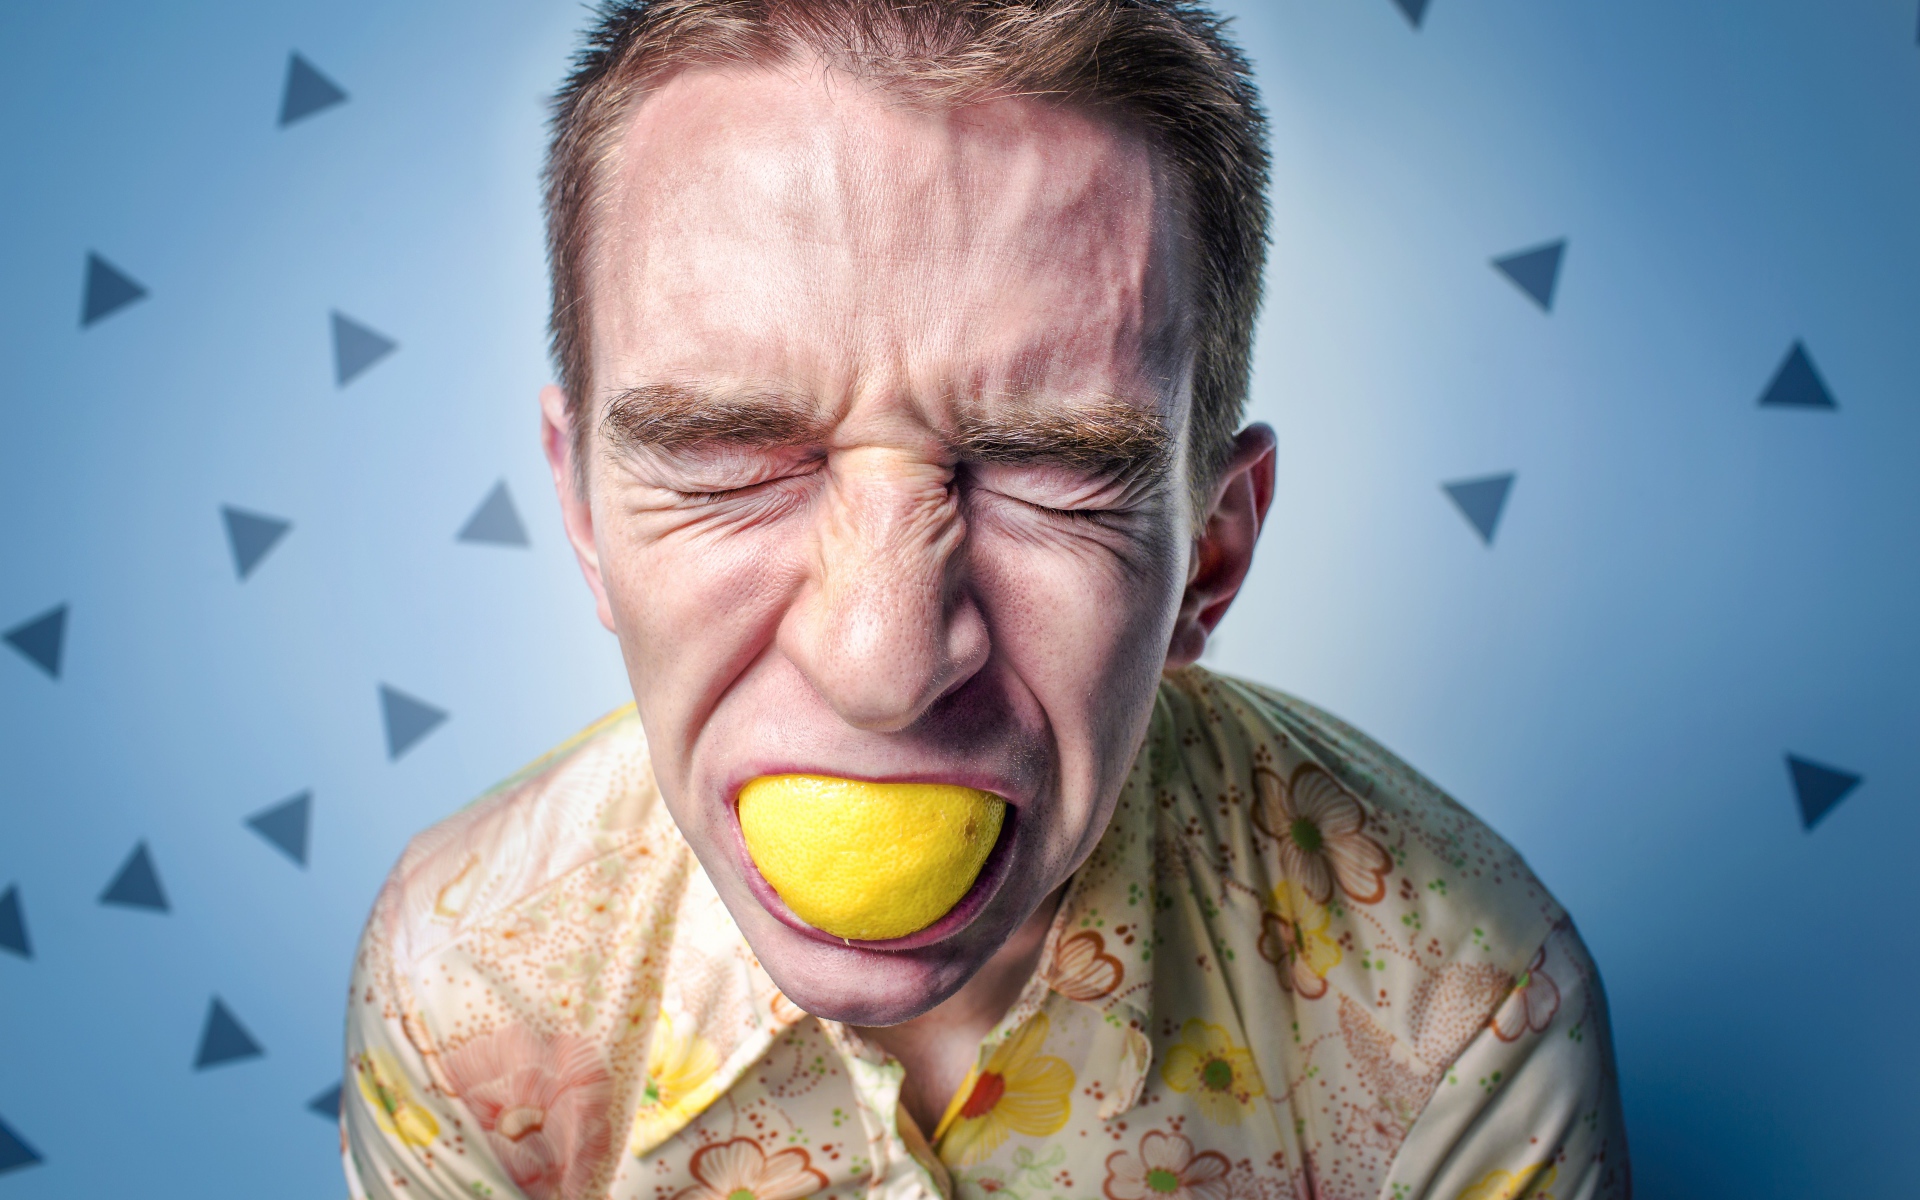 Мужчина с закрытыми глазами ест лимон 